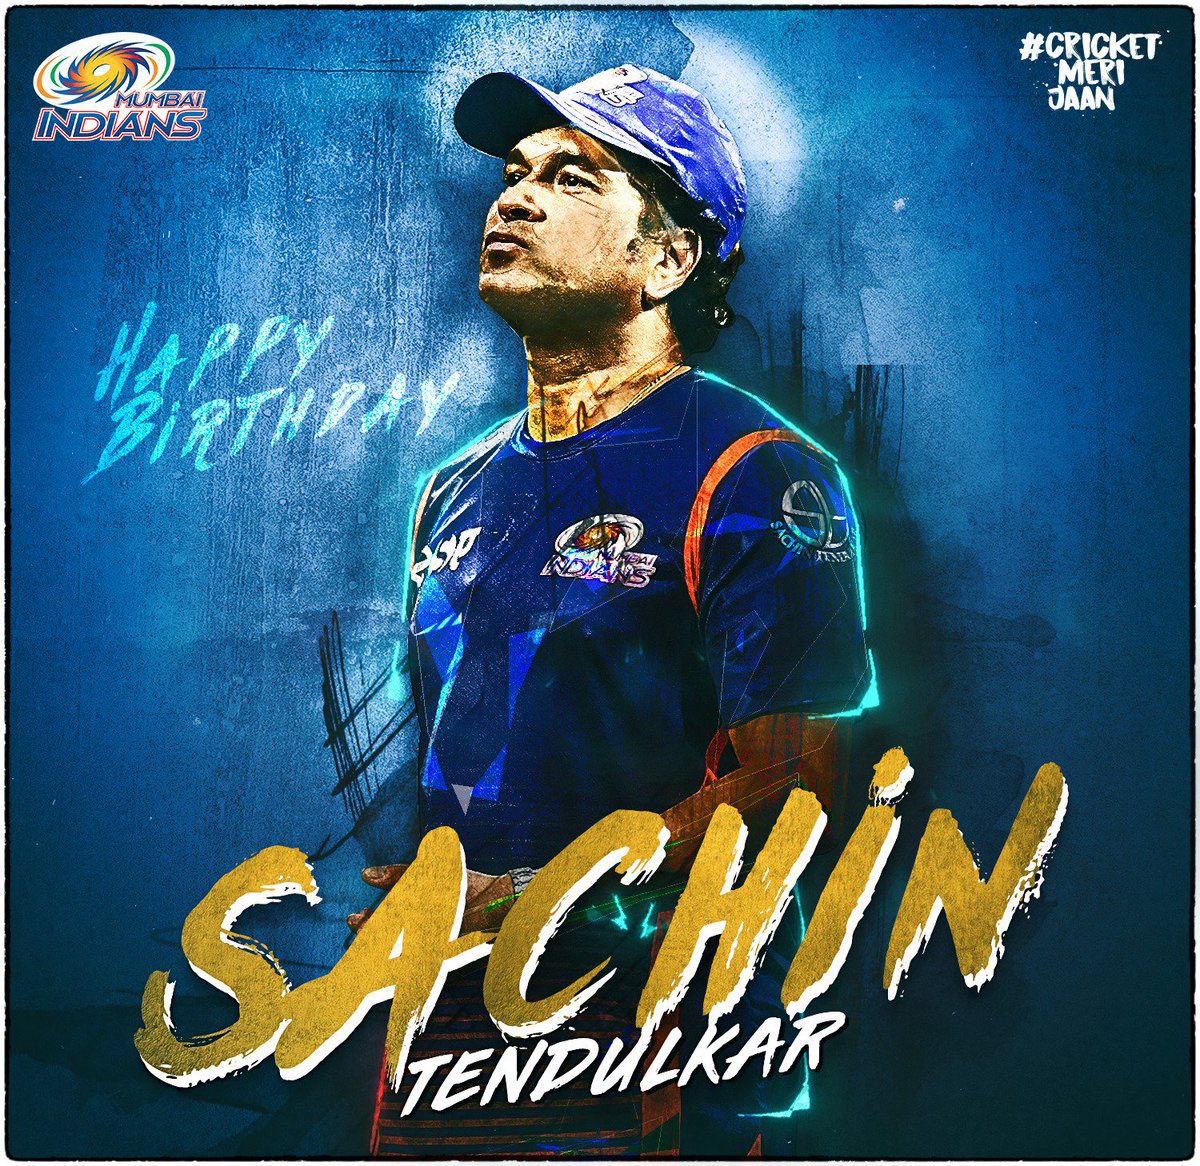 Happy birthday Sir Sachin Tendulkar 